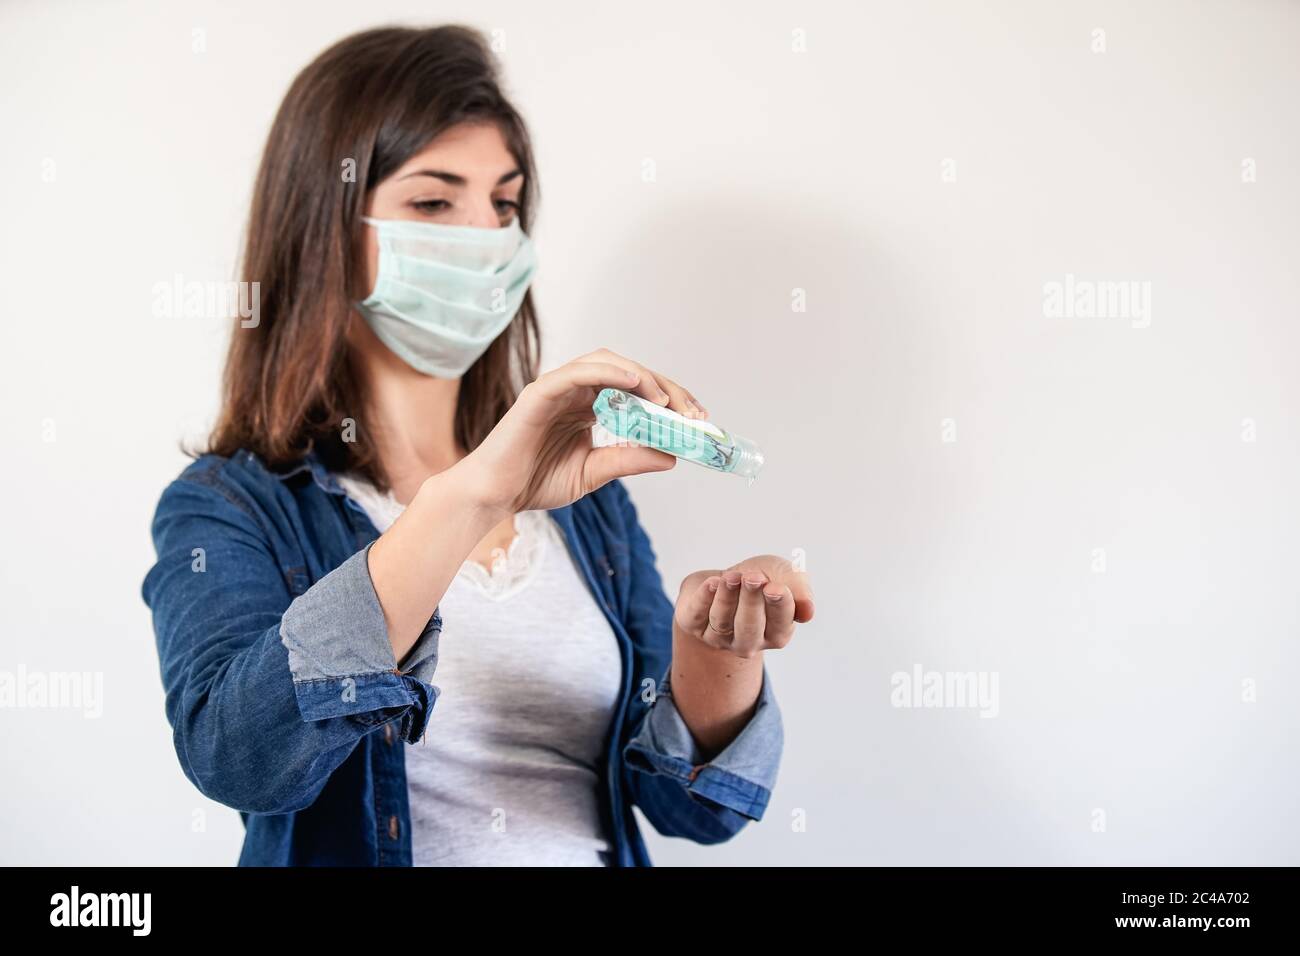 Femme avec masque de protection médicale mettant sur antiseptique pour désinfecter ses mains Banque D'Images